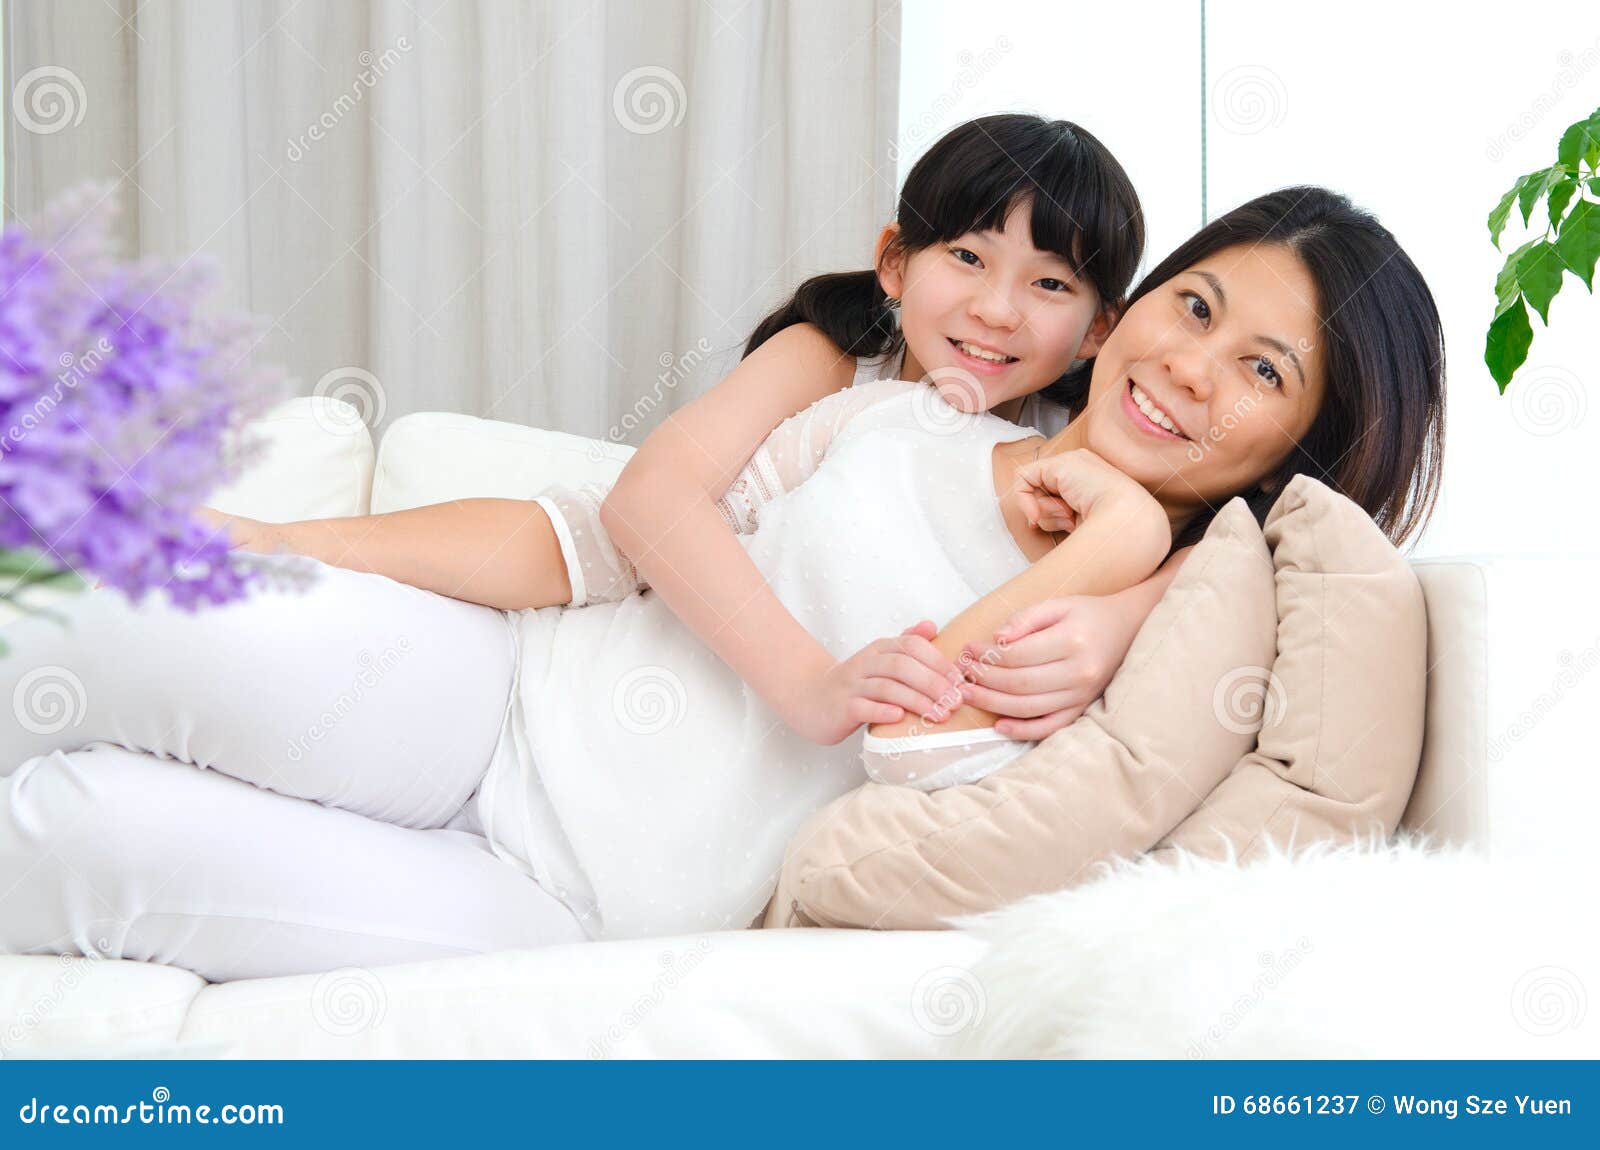 Мамы и дочери азиатка. Азиатские мама с дочкой. Мама азиатка и дочь европейка. Мама и маленькая дочка Азиат. Мама азиатка и дочь Иностранка.